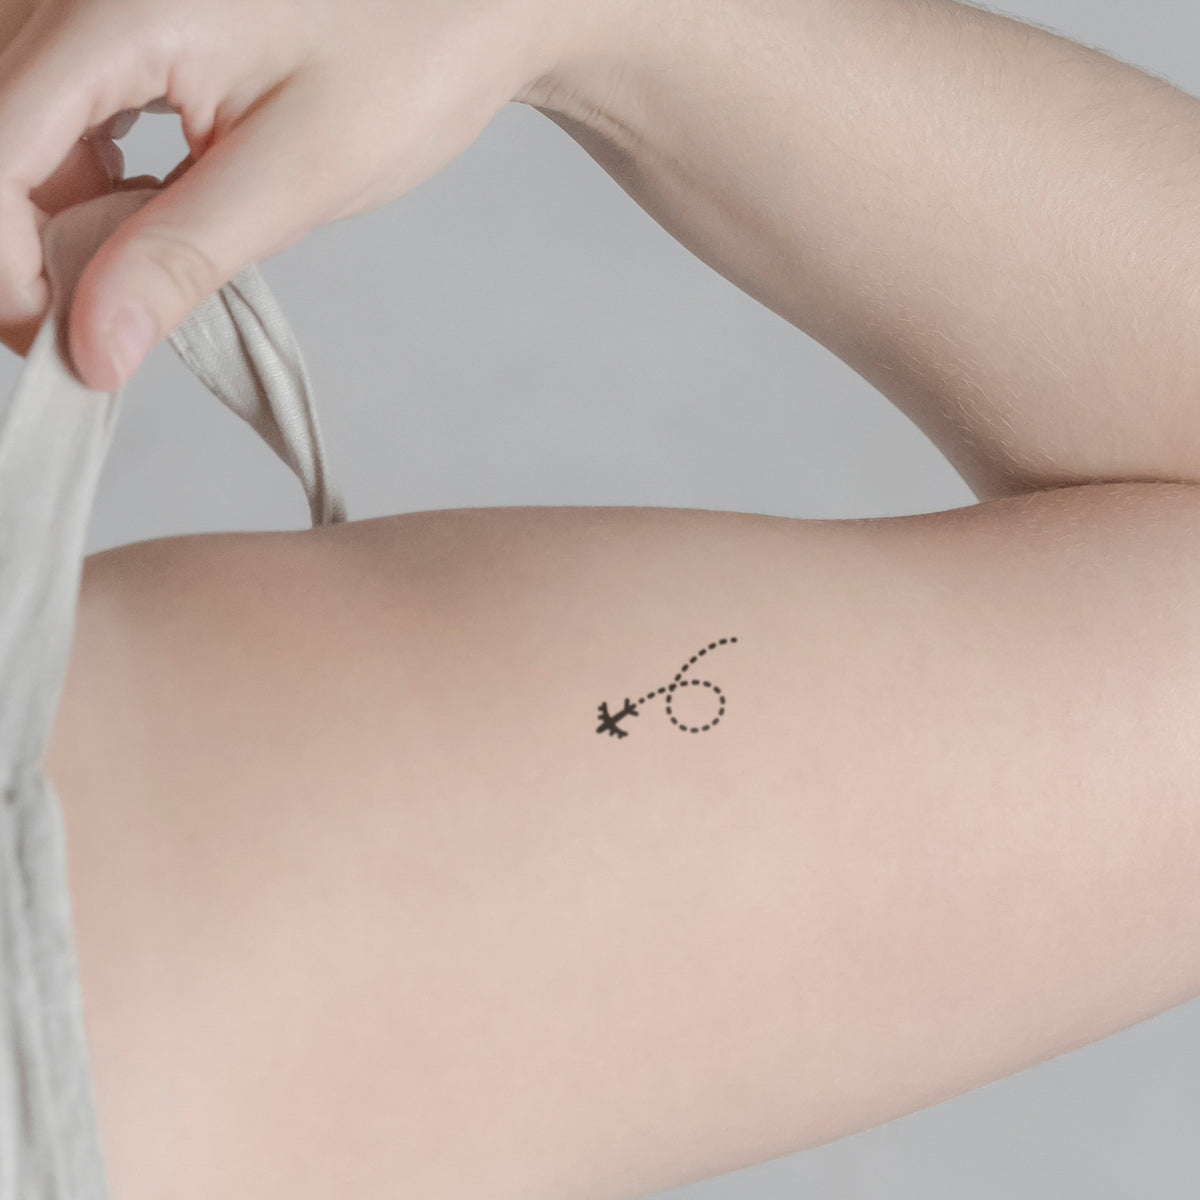 Fluglinie Tattoo von minink, der Marke für temporäre Tattoos.